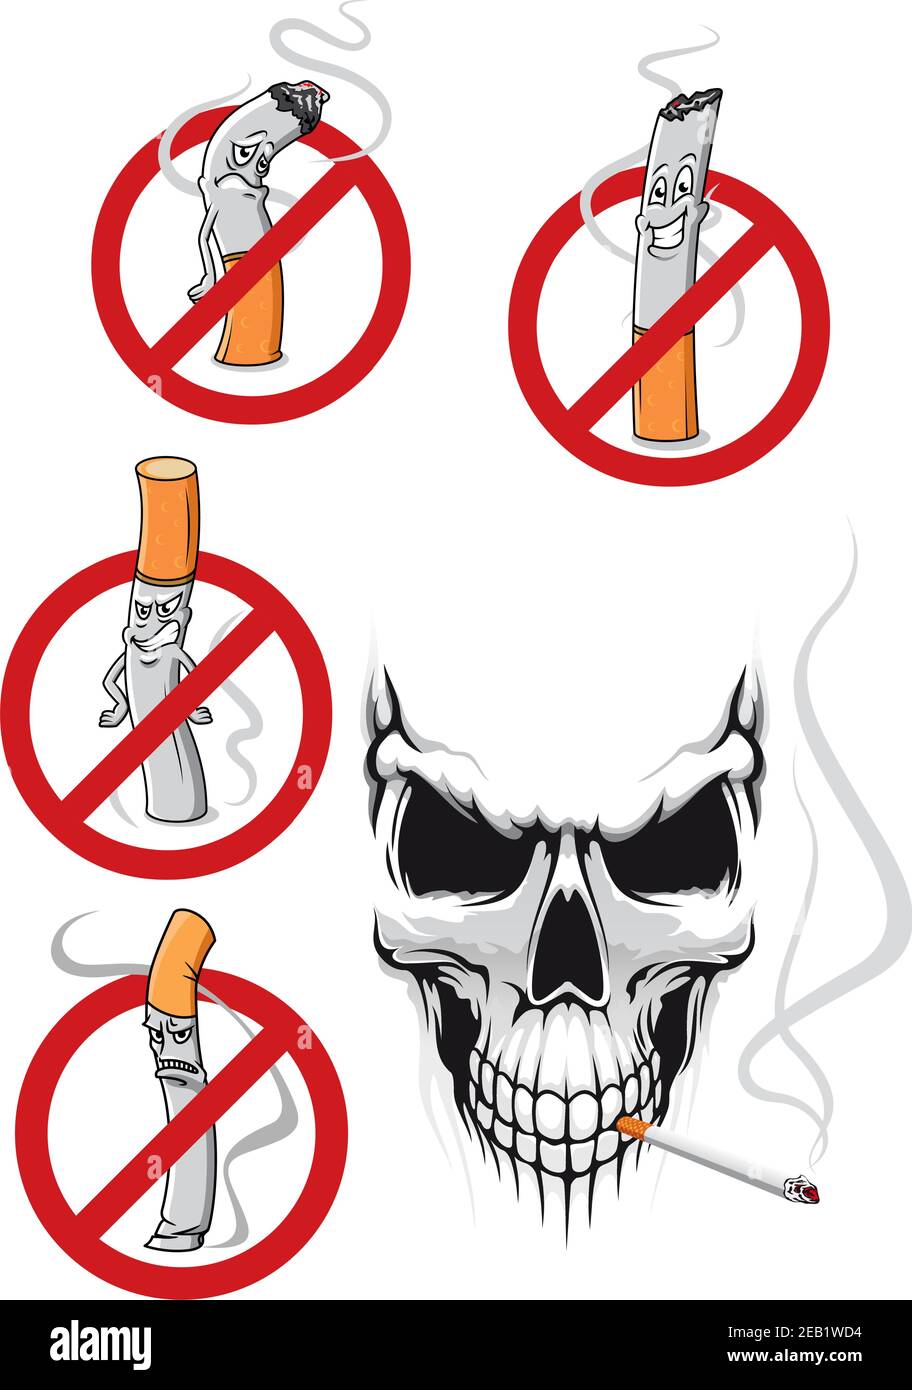 smoking kills cartoons